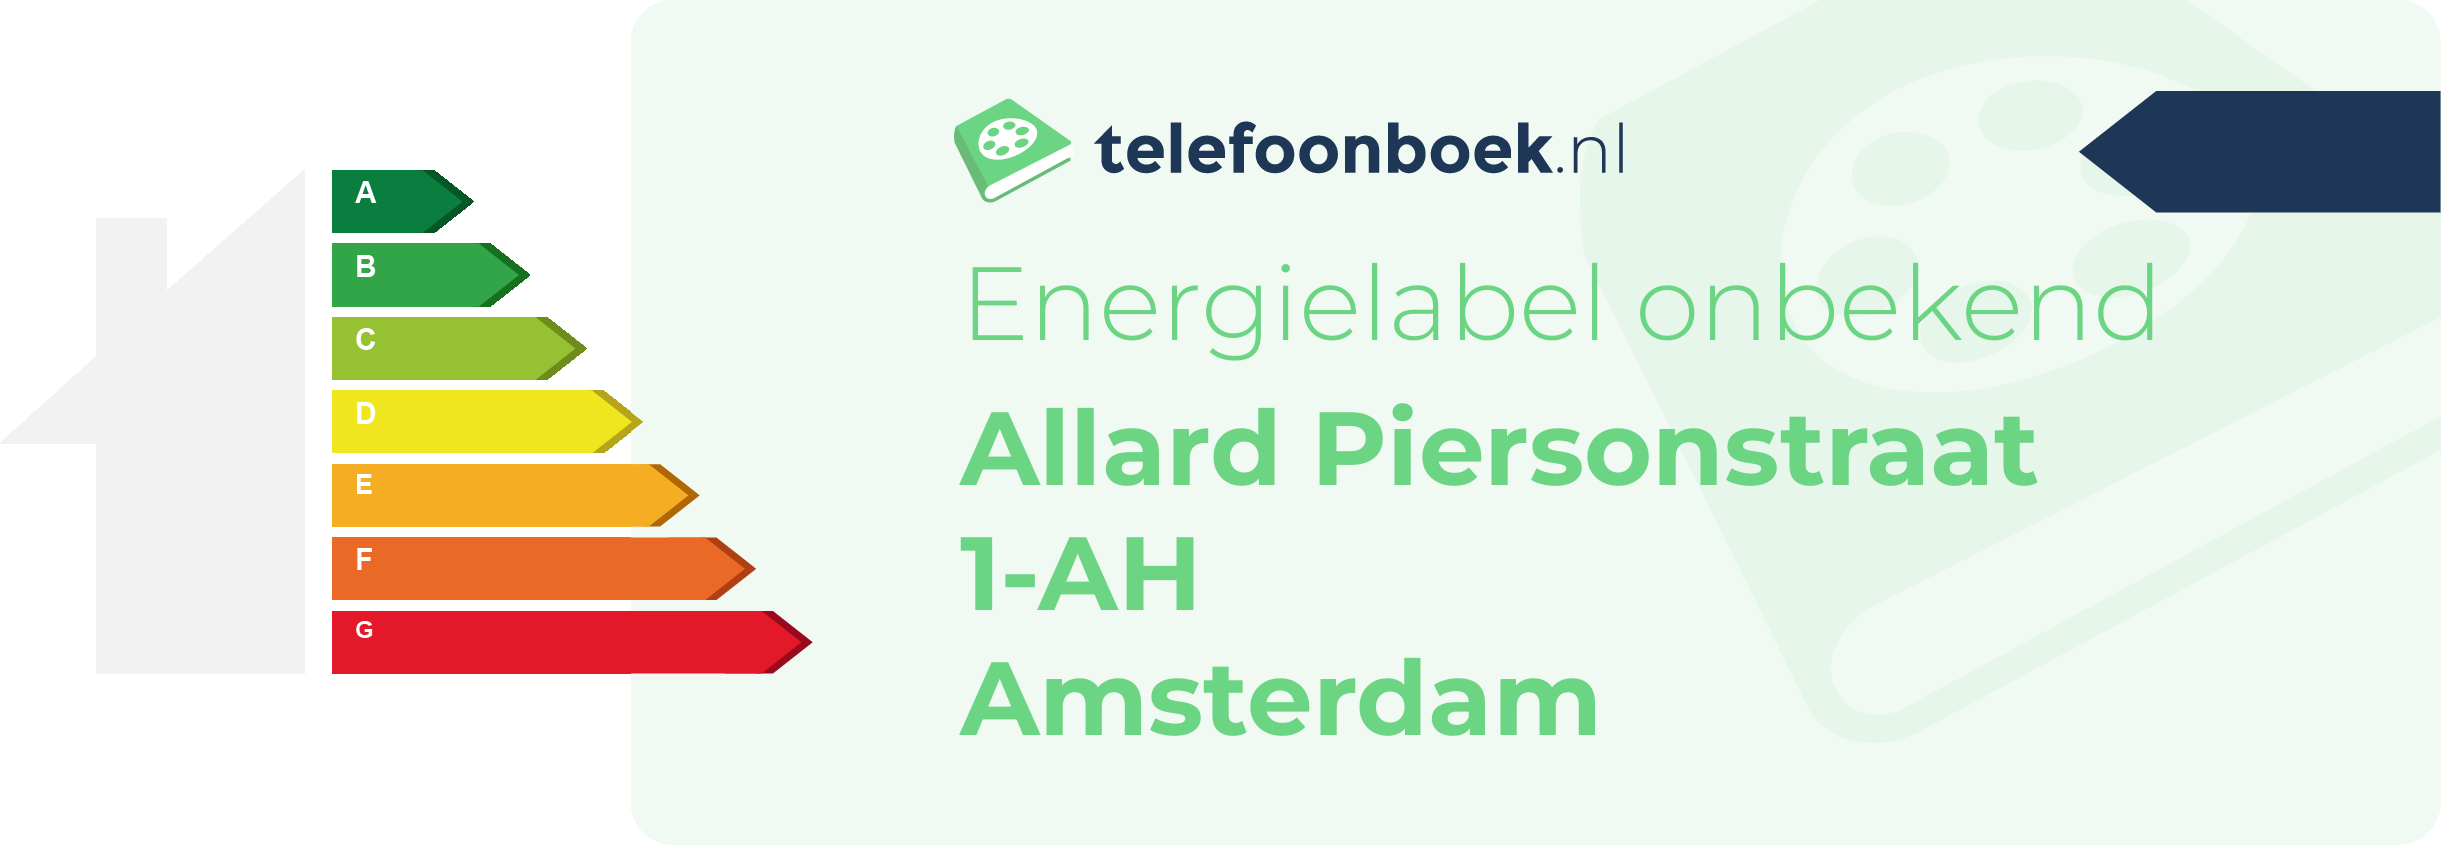 Energielabel Allard Piersonstraat 1-AH Amsterdam